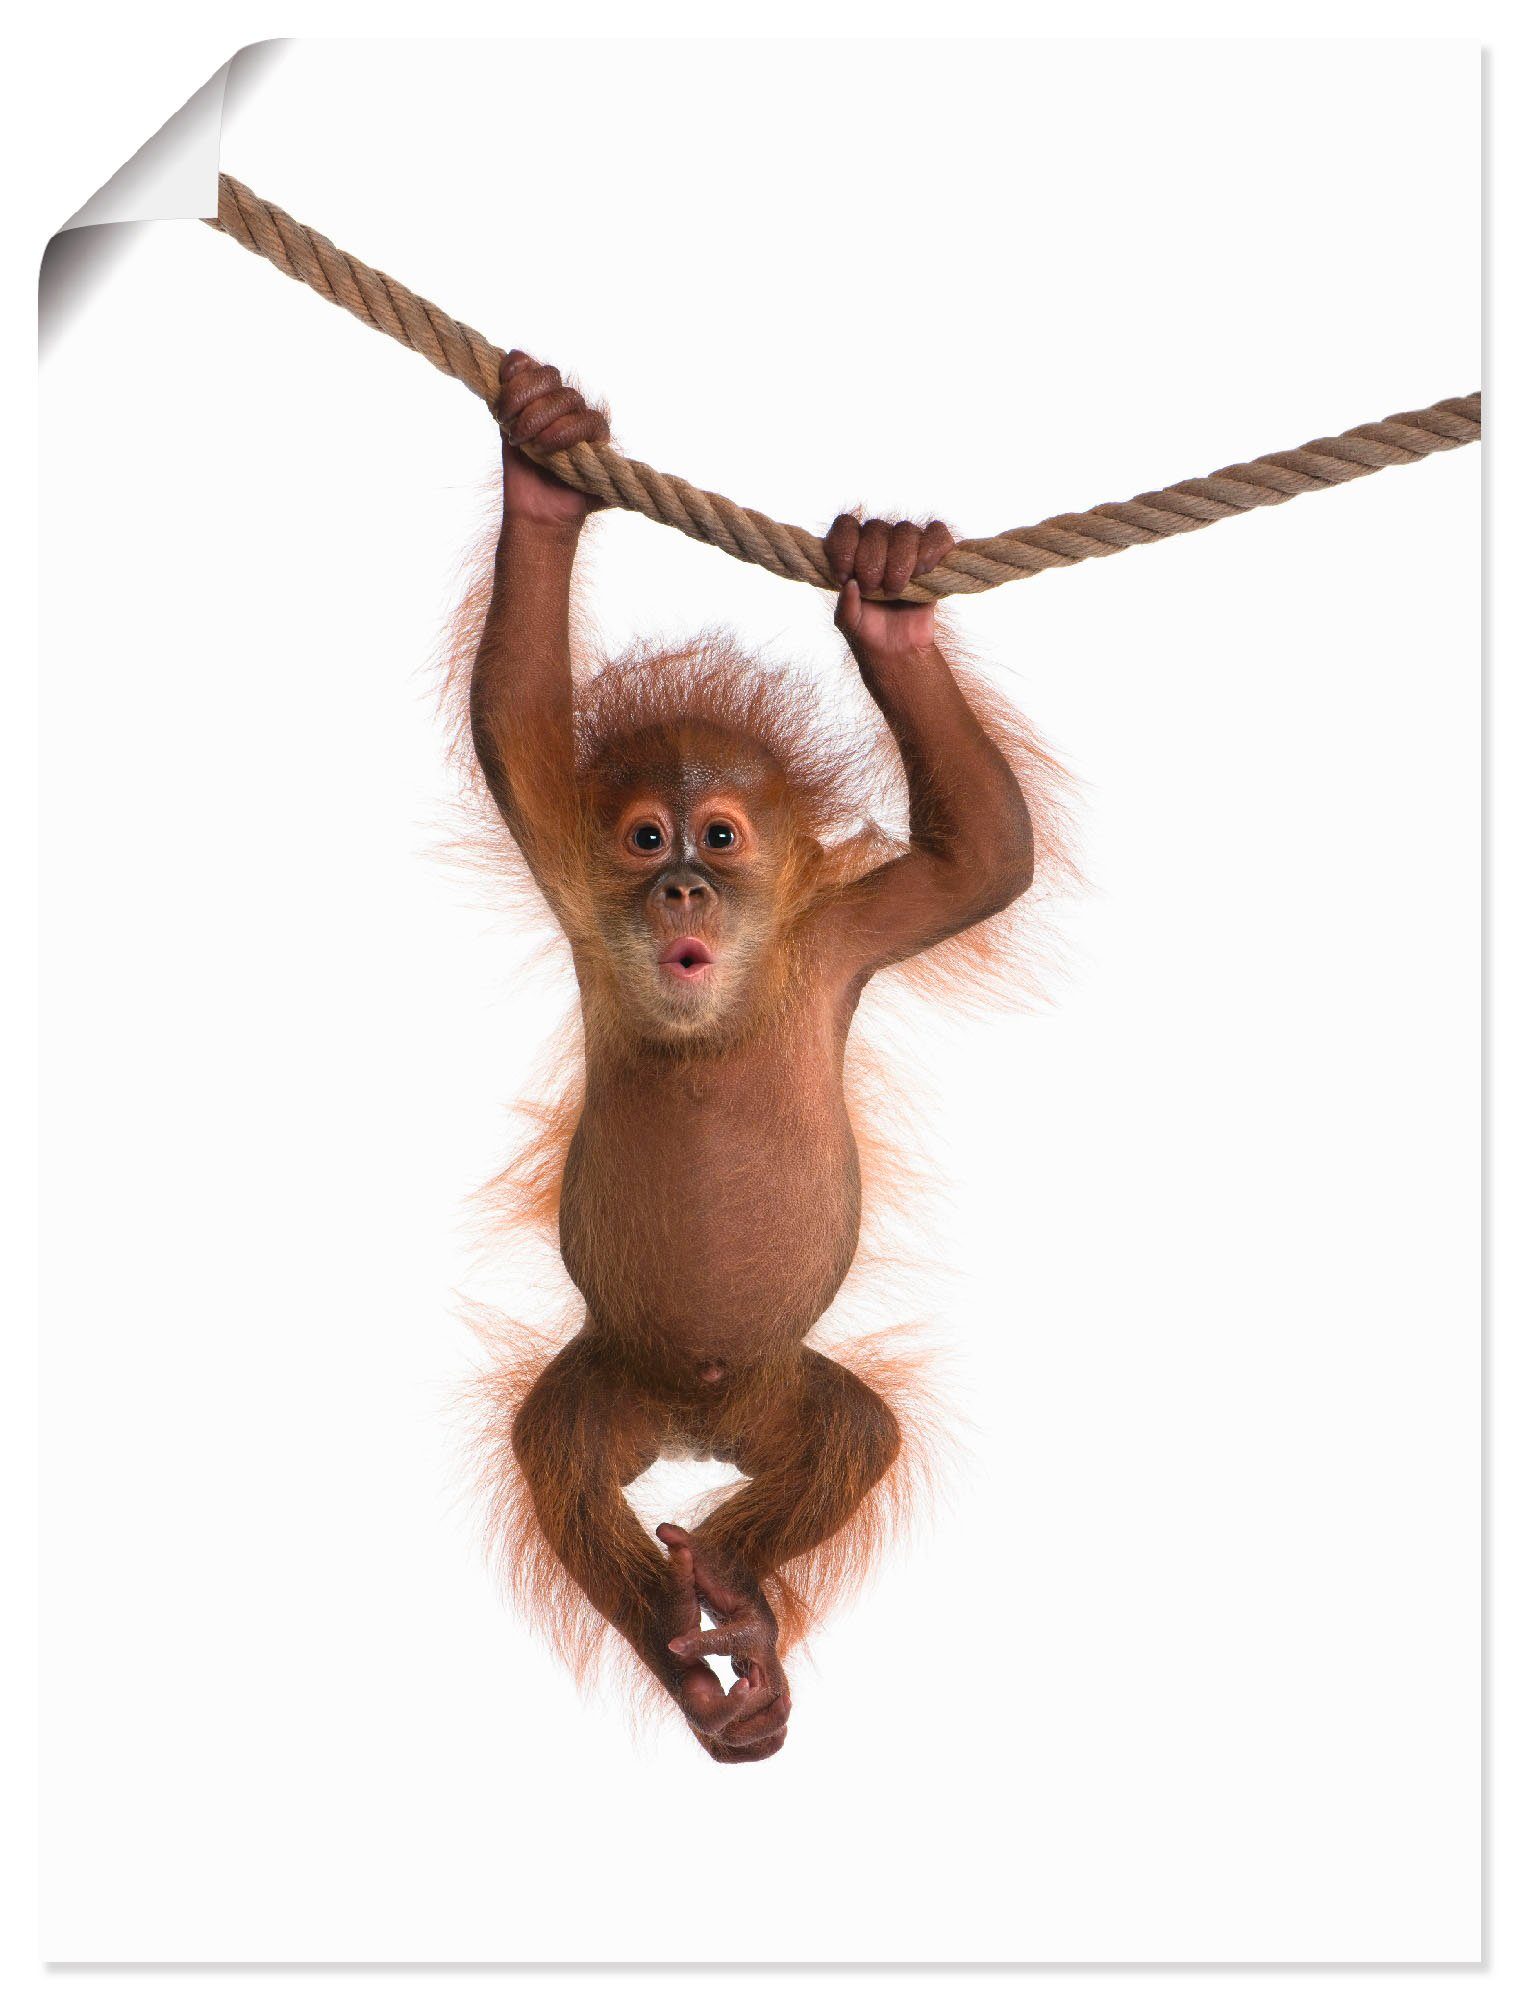 Artland Wandbild Baby Orang Utan hängt an Seil II, Wildtiere (1 St), als Alubild, Leinwandbild, Wandaufkleber oder Poster in versch. Größen